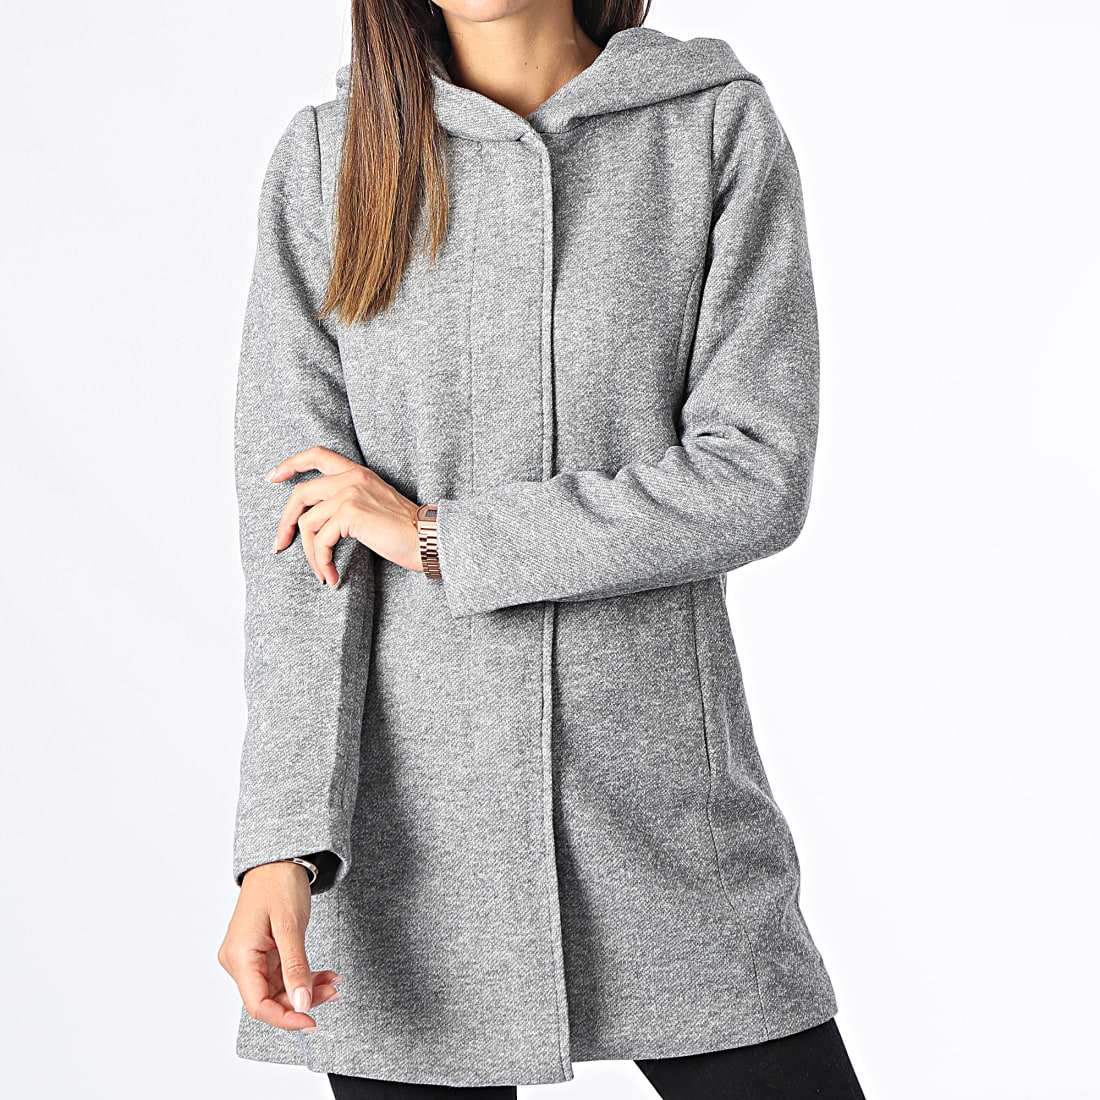 manteau femme capuche gris